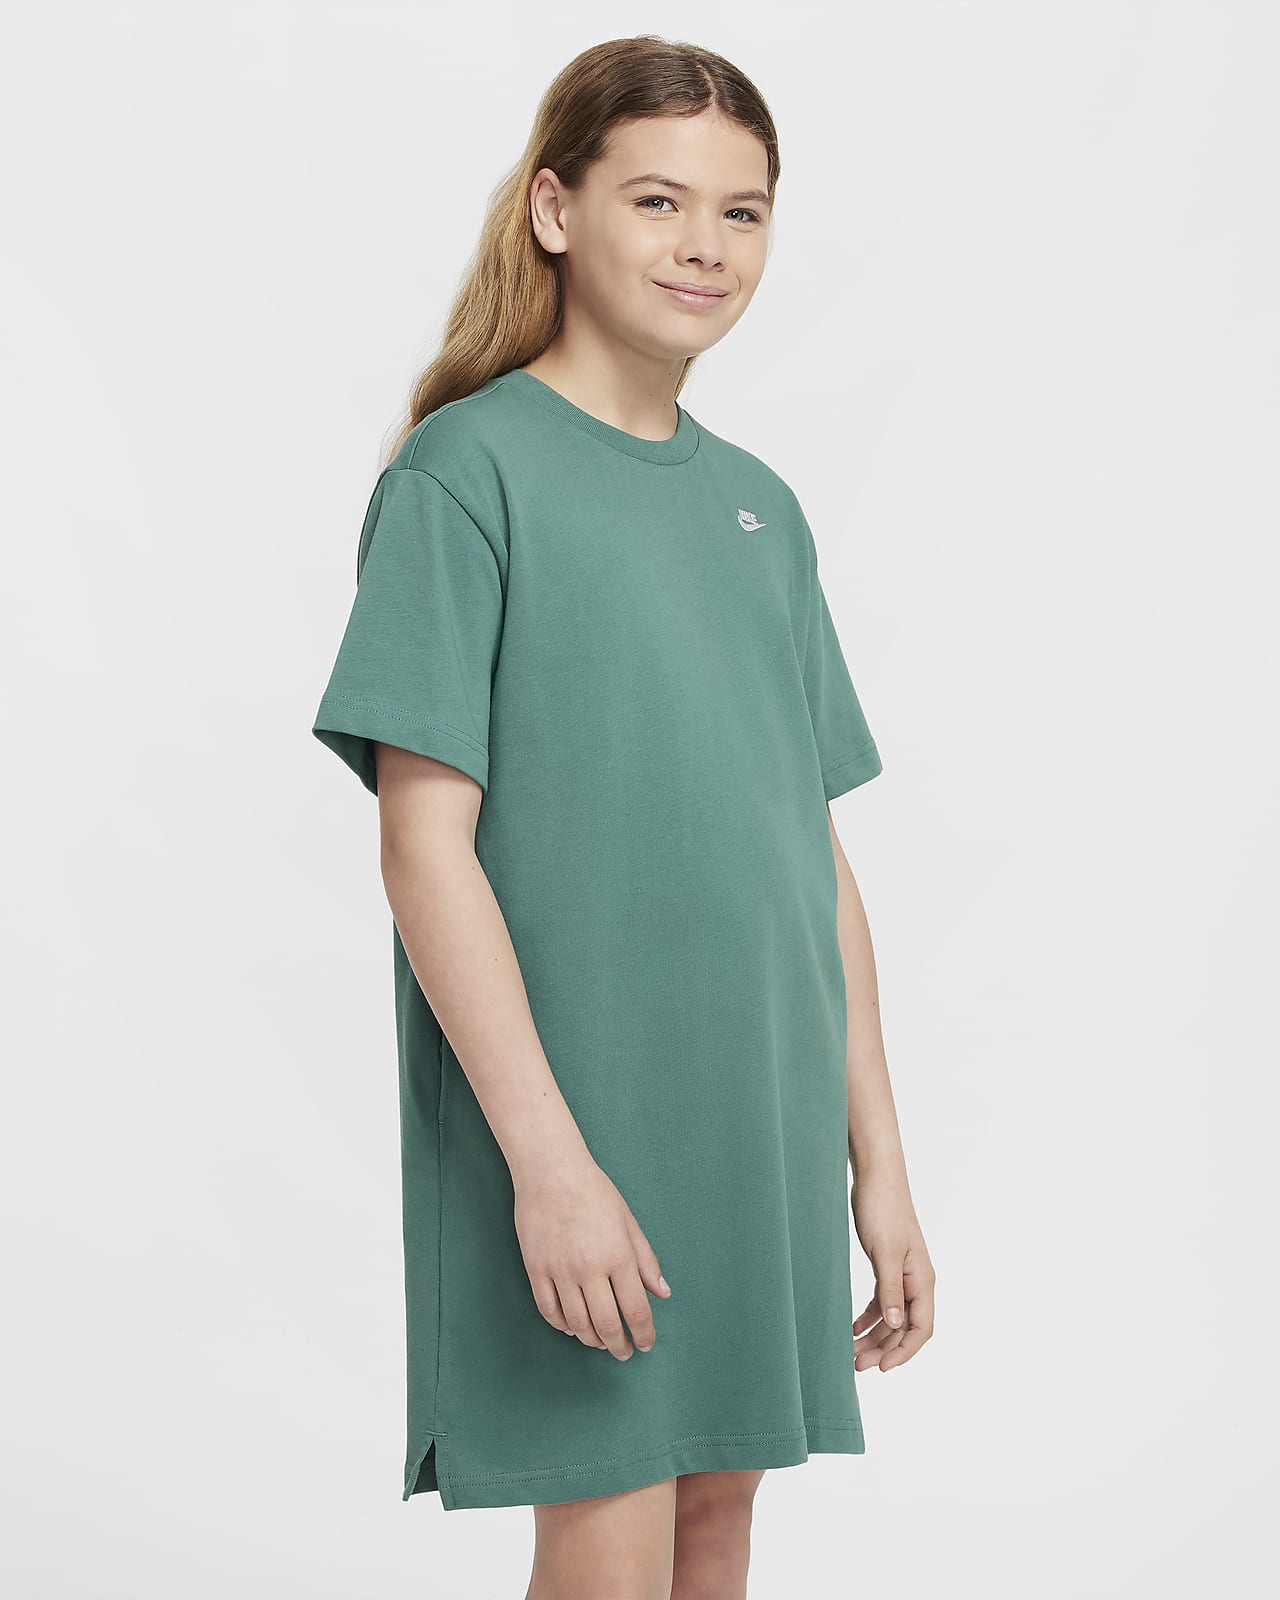 Tričkové šaty Nike Sportswear pro větší děti (dívky)